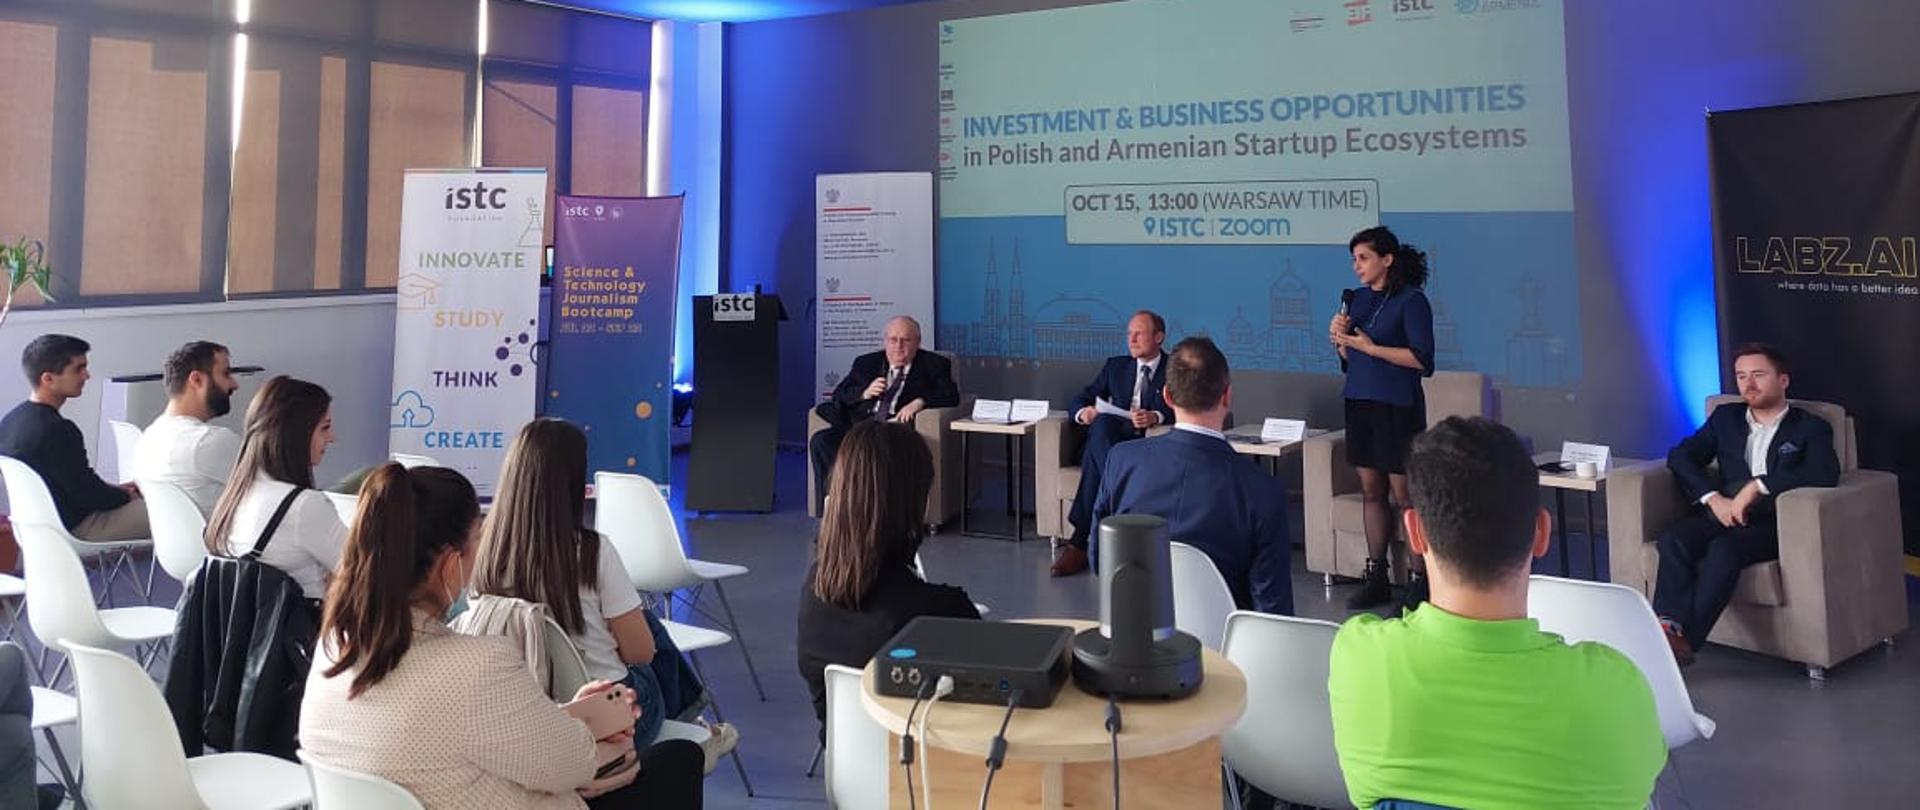 Możliwości biznesowe i inwestycyjne w ekosystemie startupowym Polski i Armenii